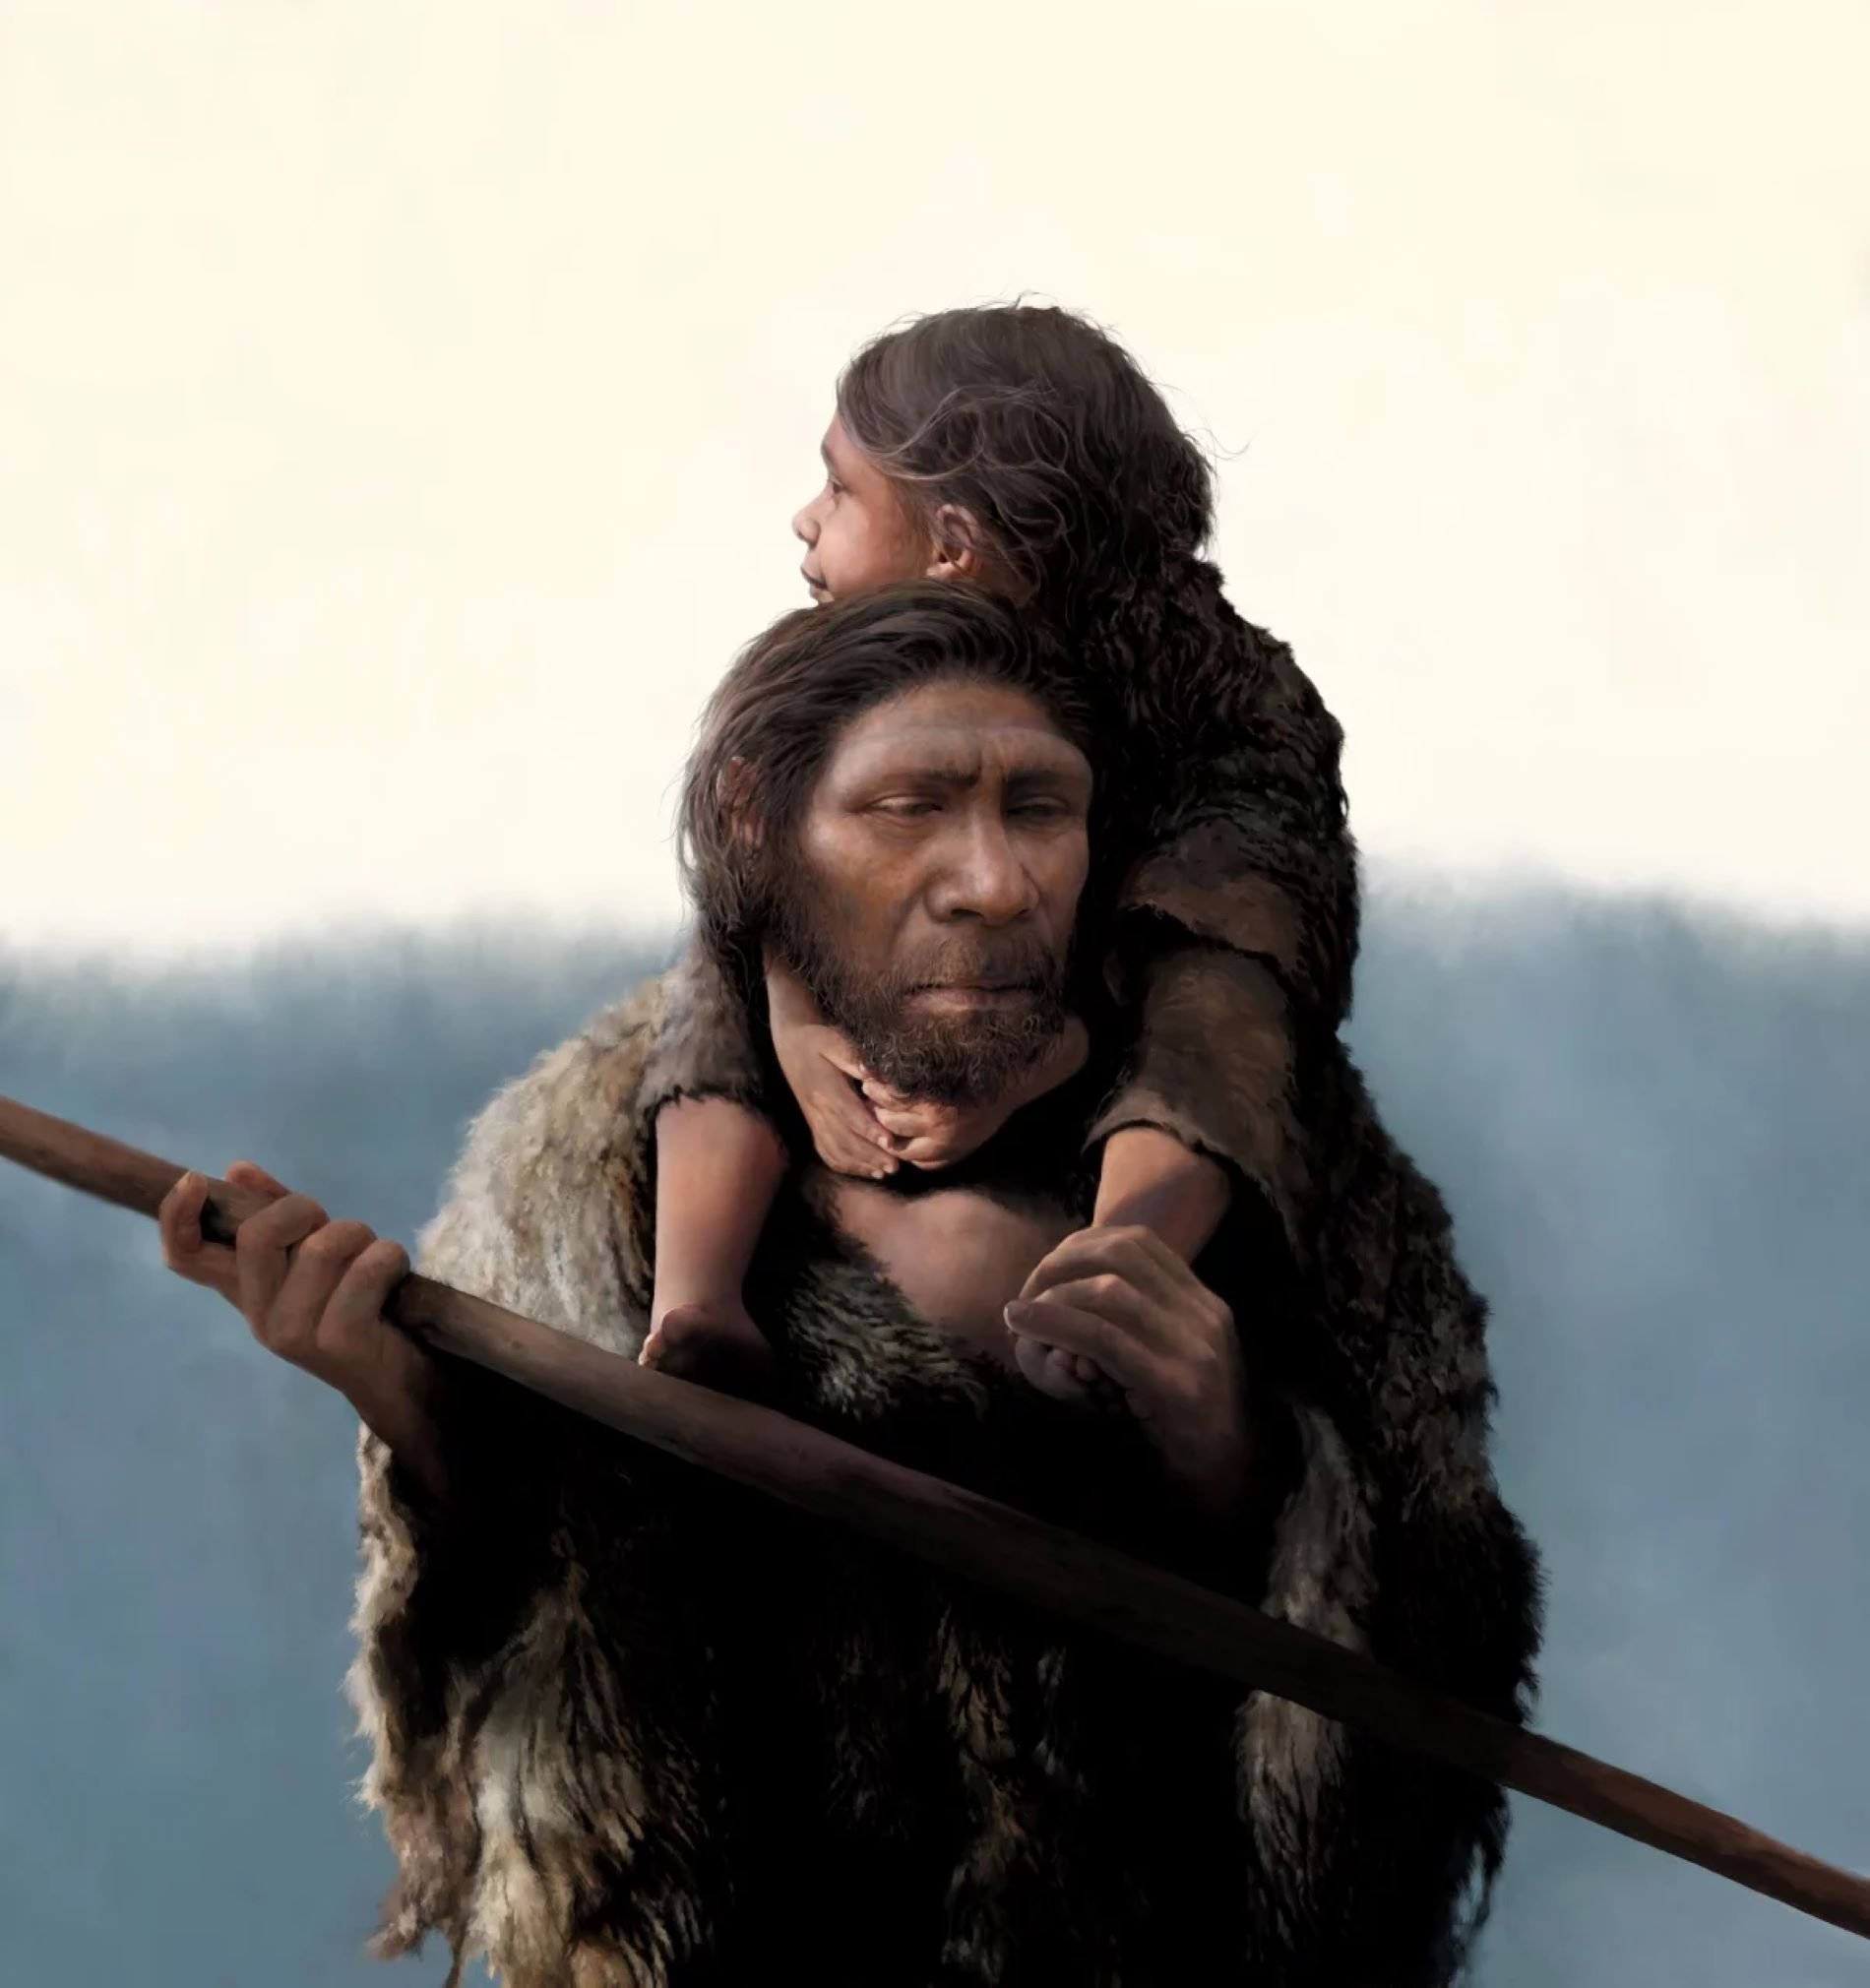 Com era una família neandertal? Les mares migraven i els pares es quedaven a casa